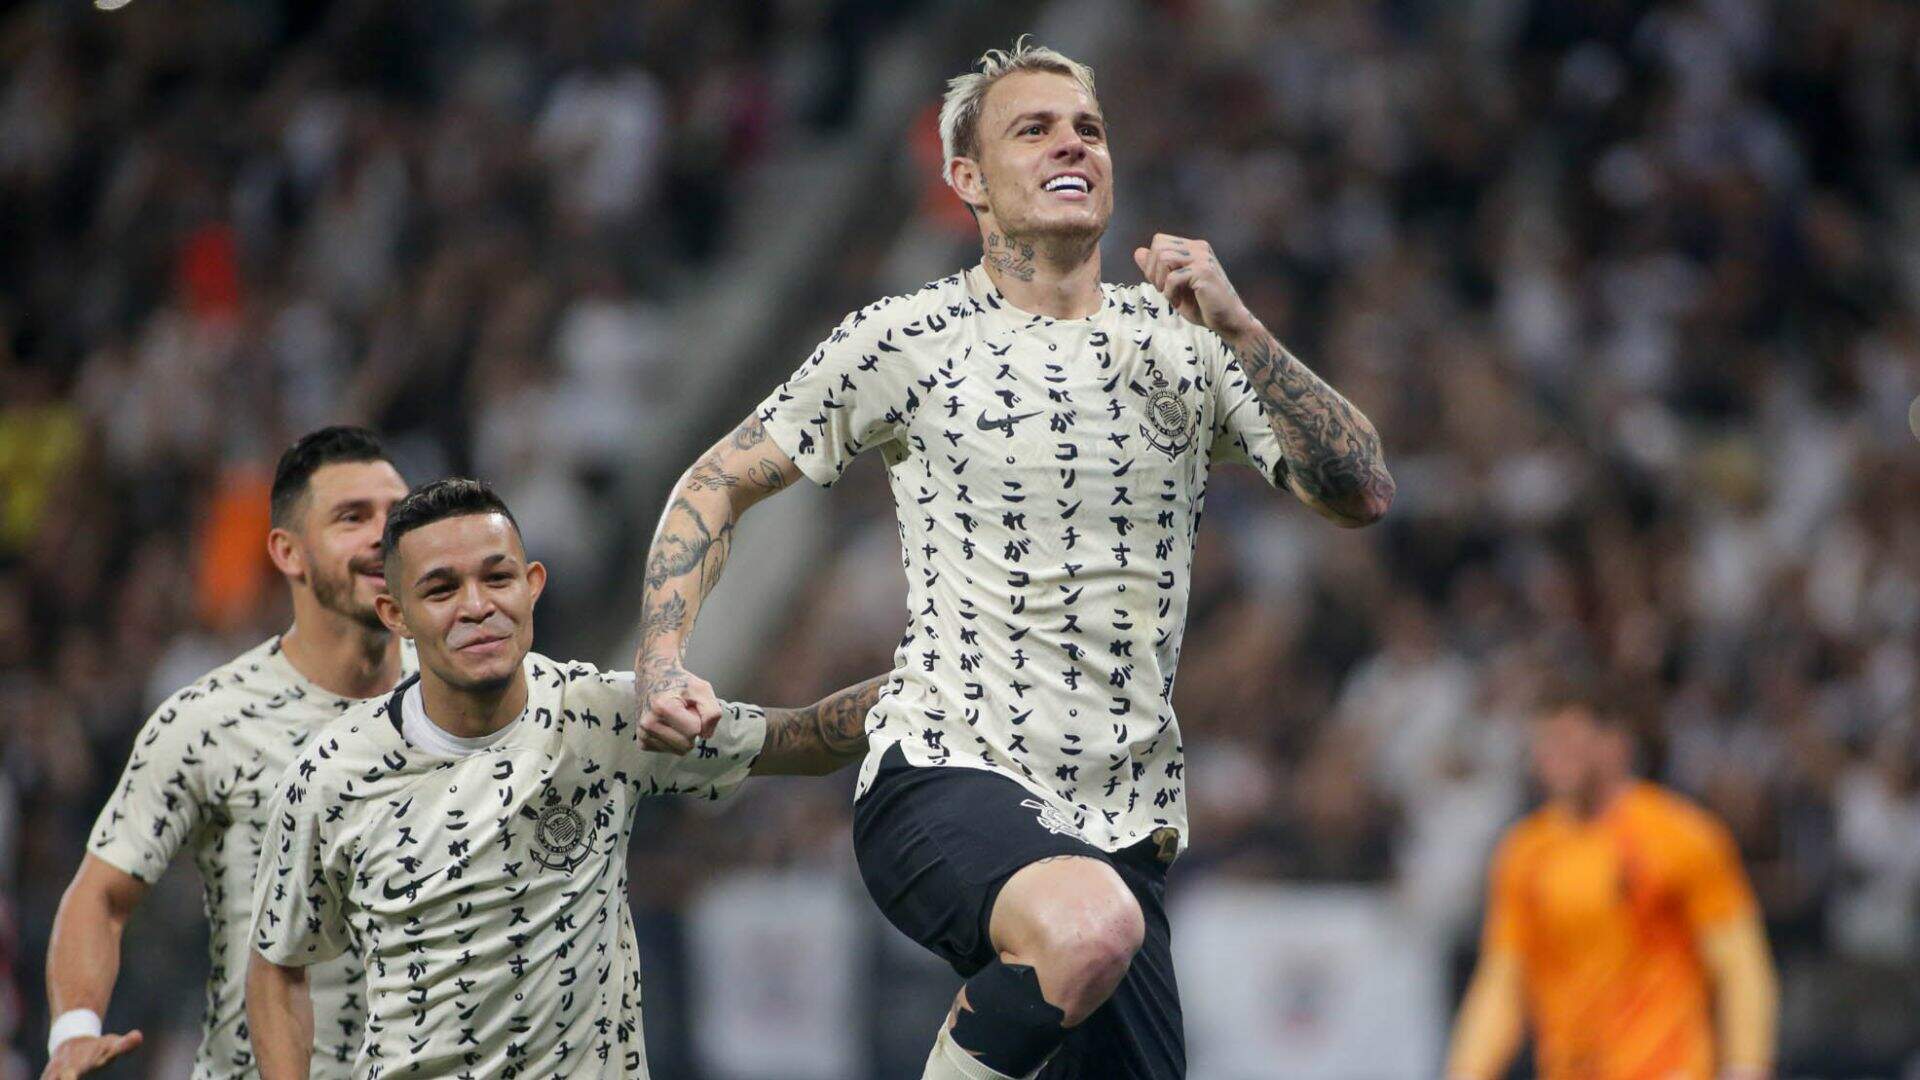 Corinthians poupa titulares, suporta a pressão e bate Athletico-PR no Brasileirão